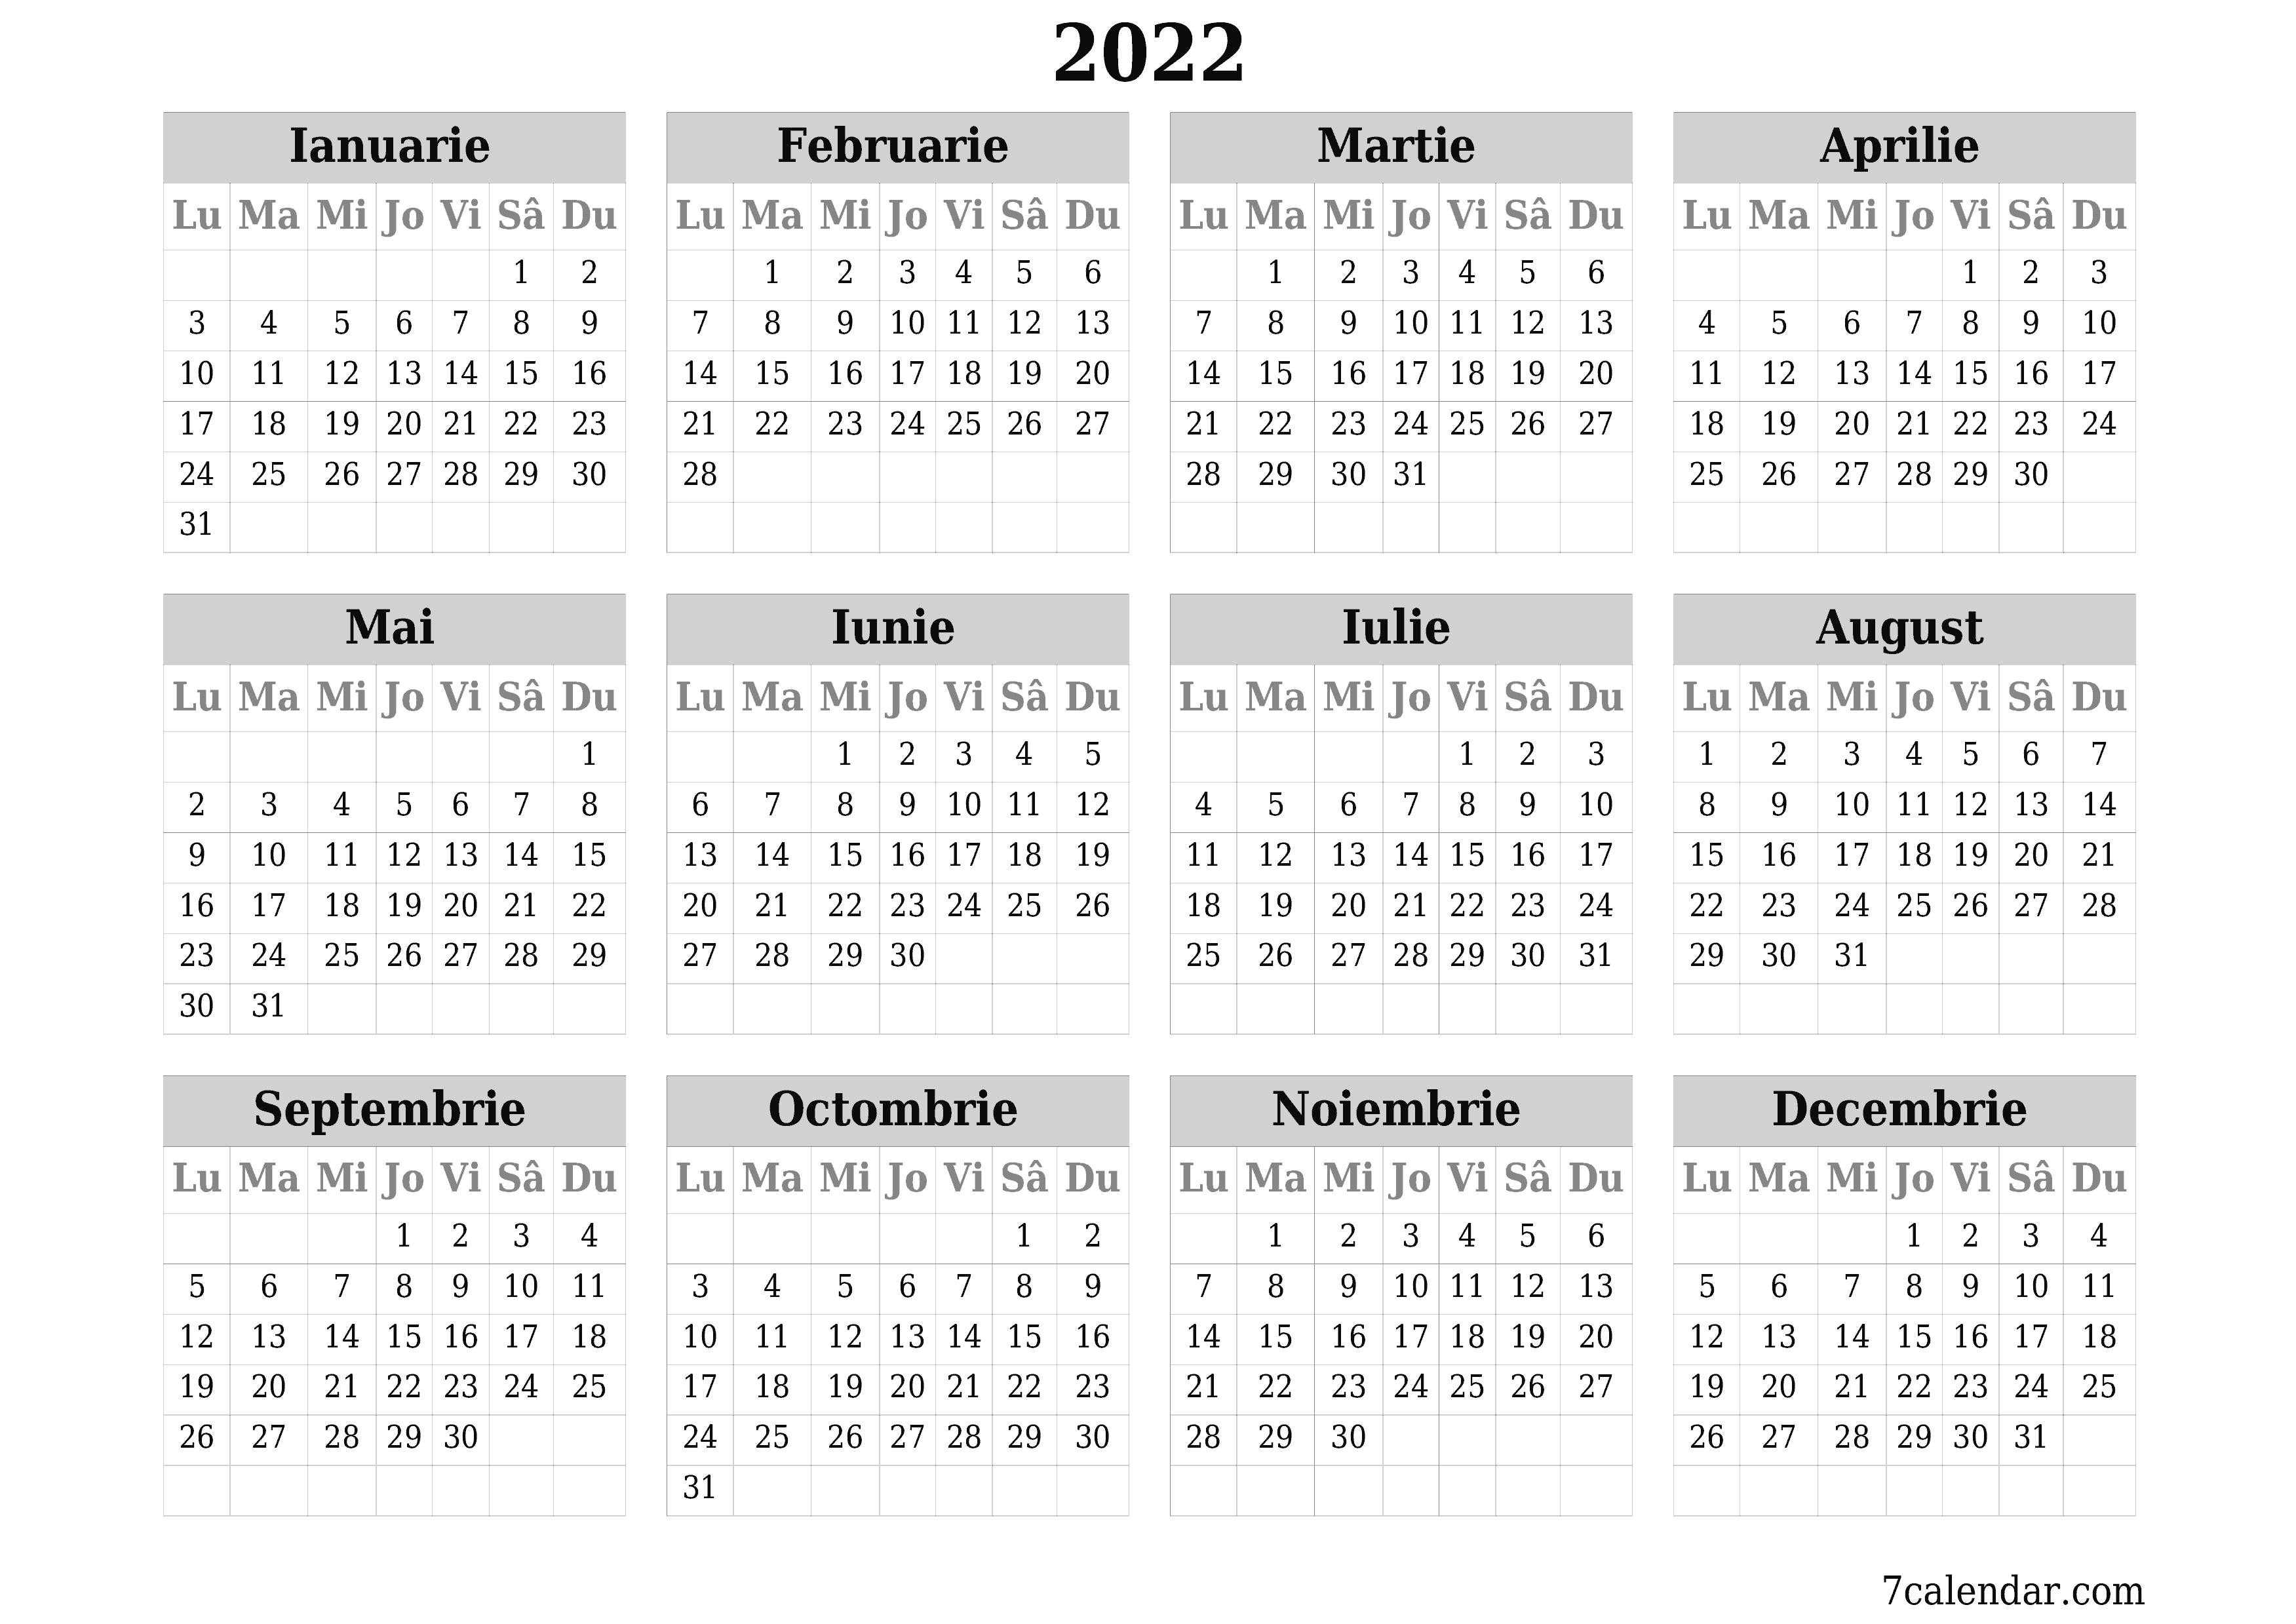 opțiuni pentru noiembrie 2022